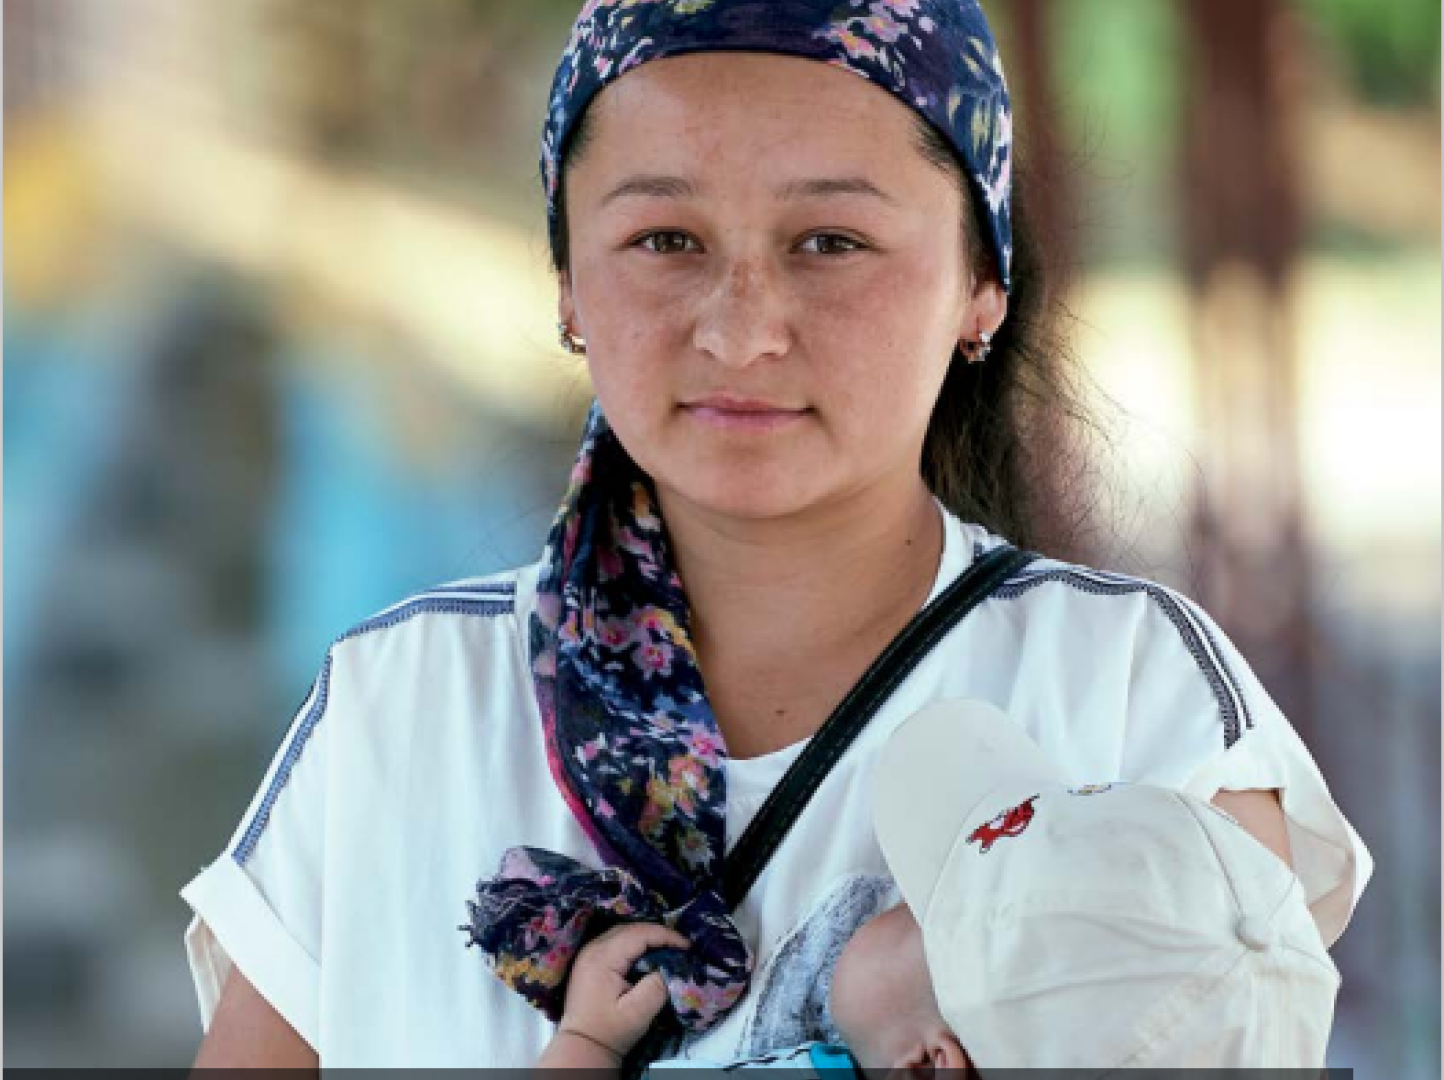 UNHCR-Kyrgyz-Statelessness